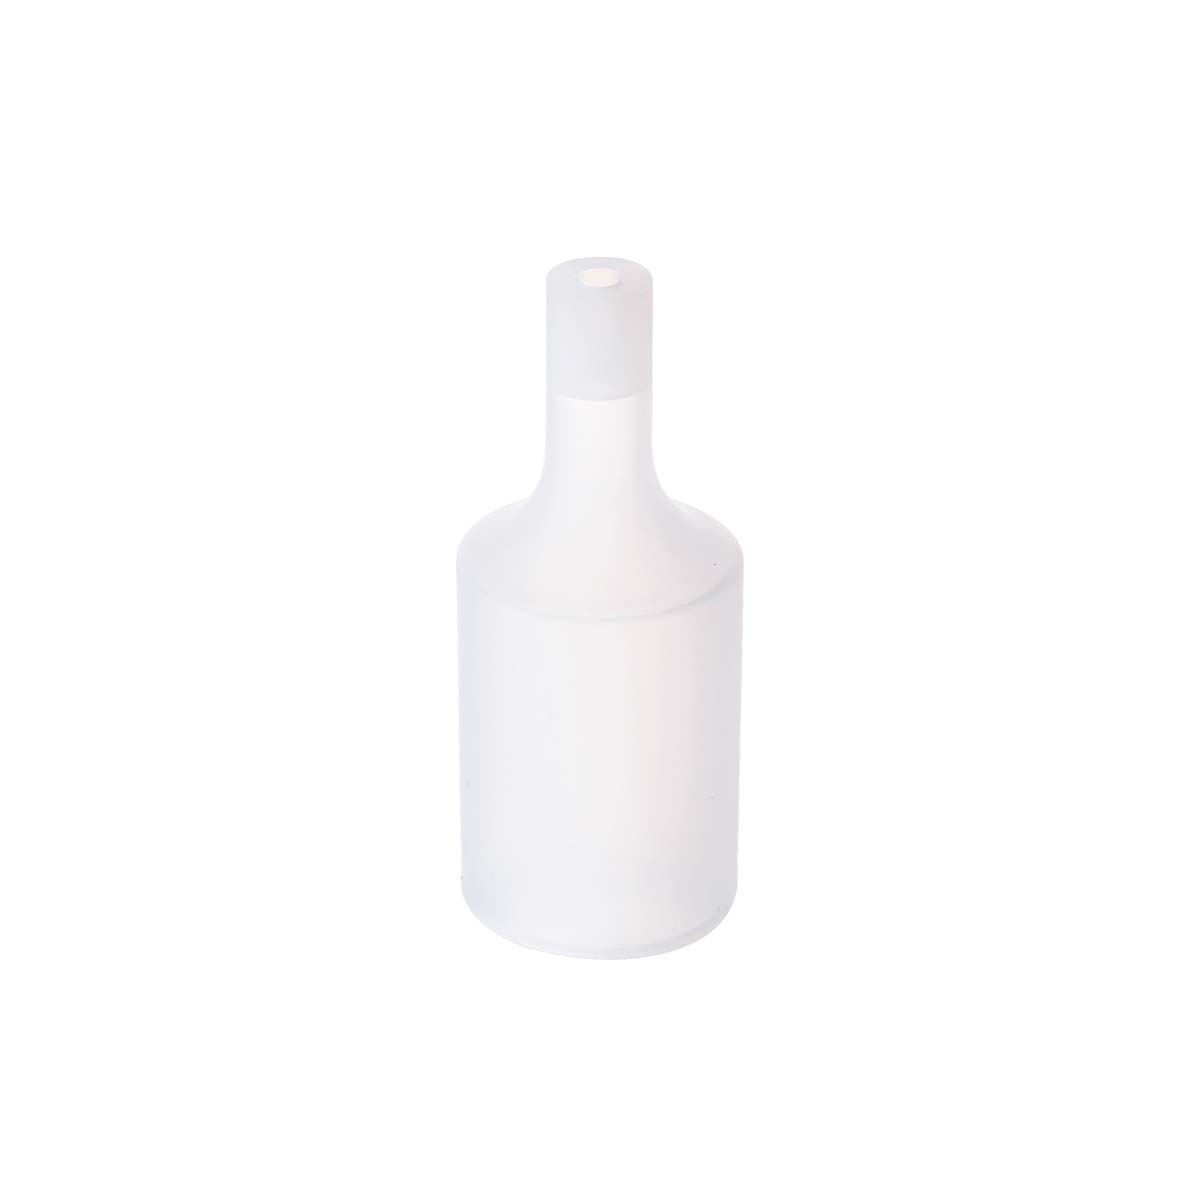 Tangla lighting - TLLH024TT - lamp holder silicon - E27 - bottle - transparent